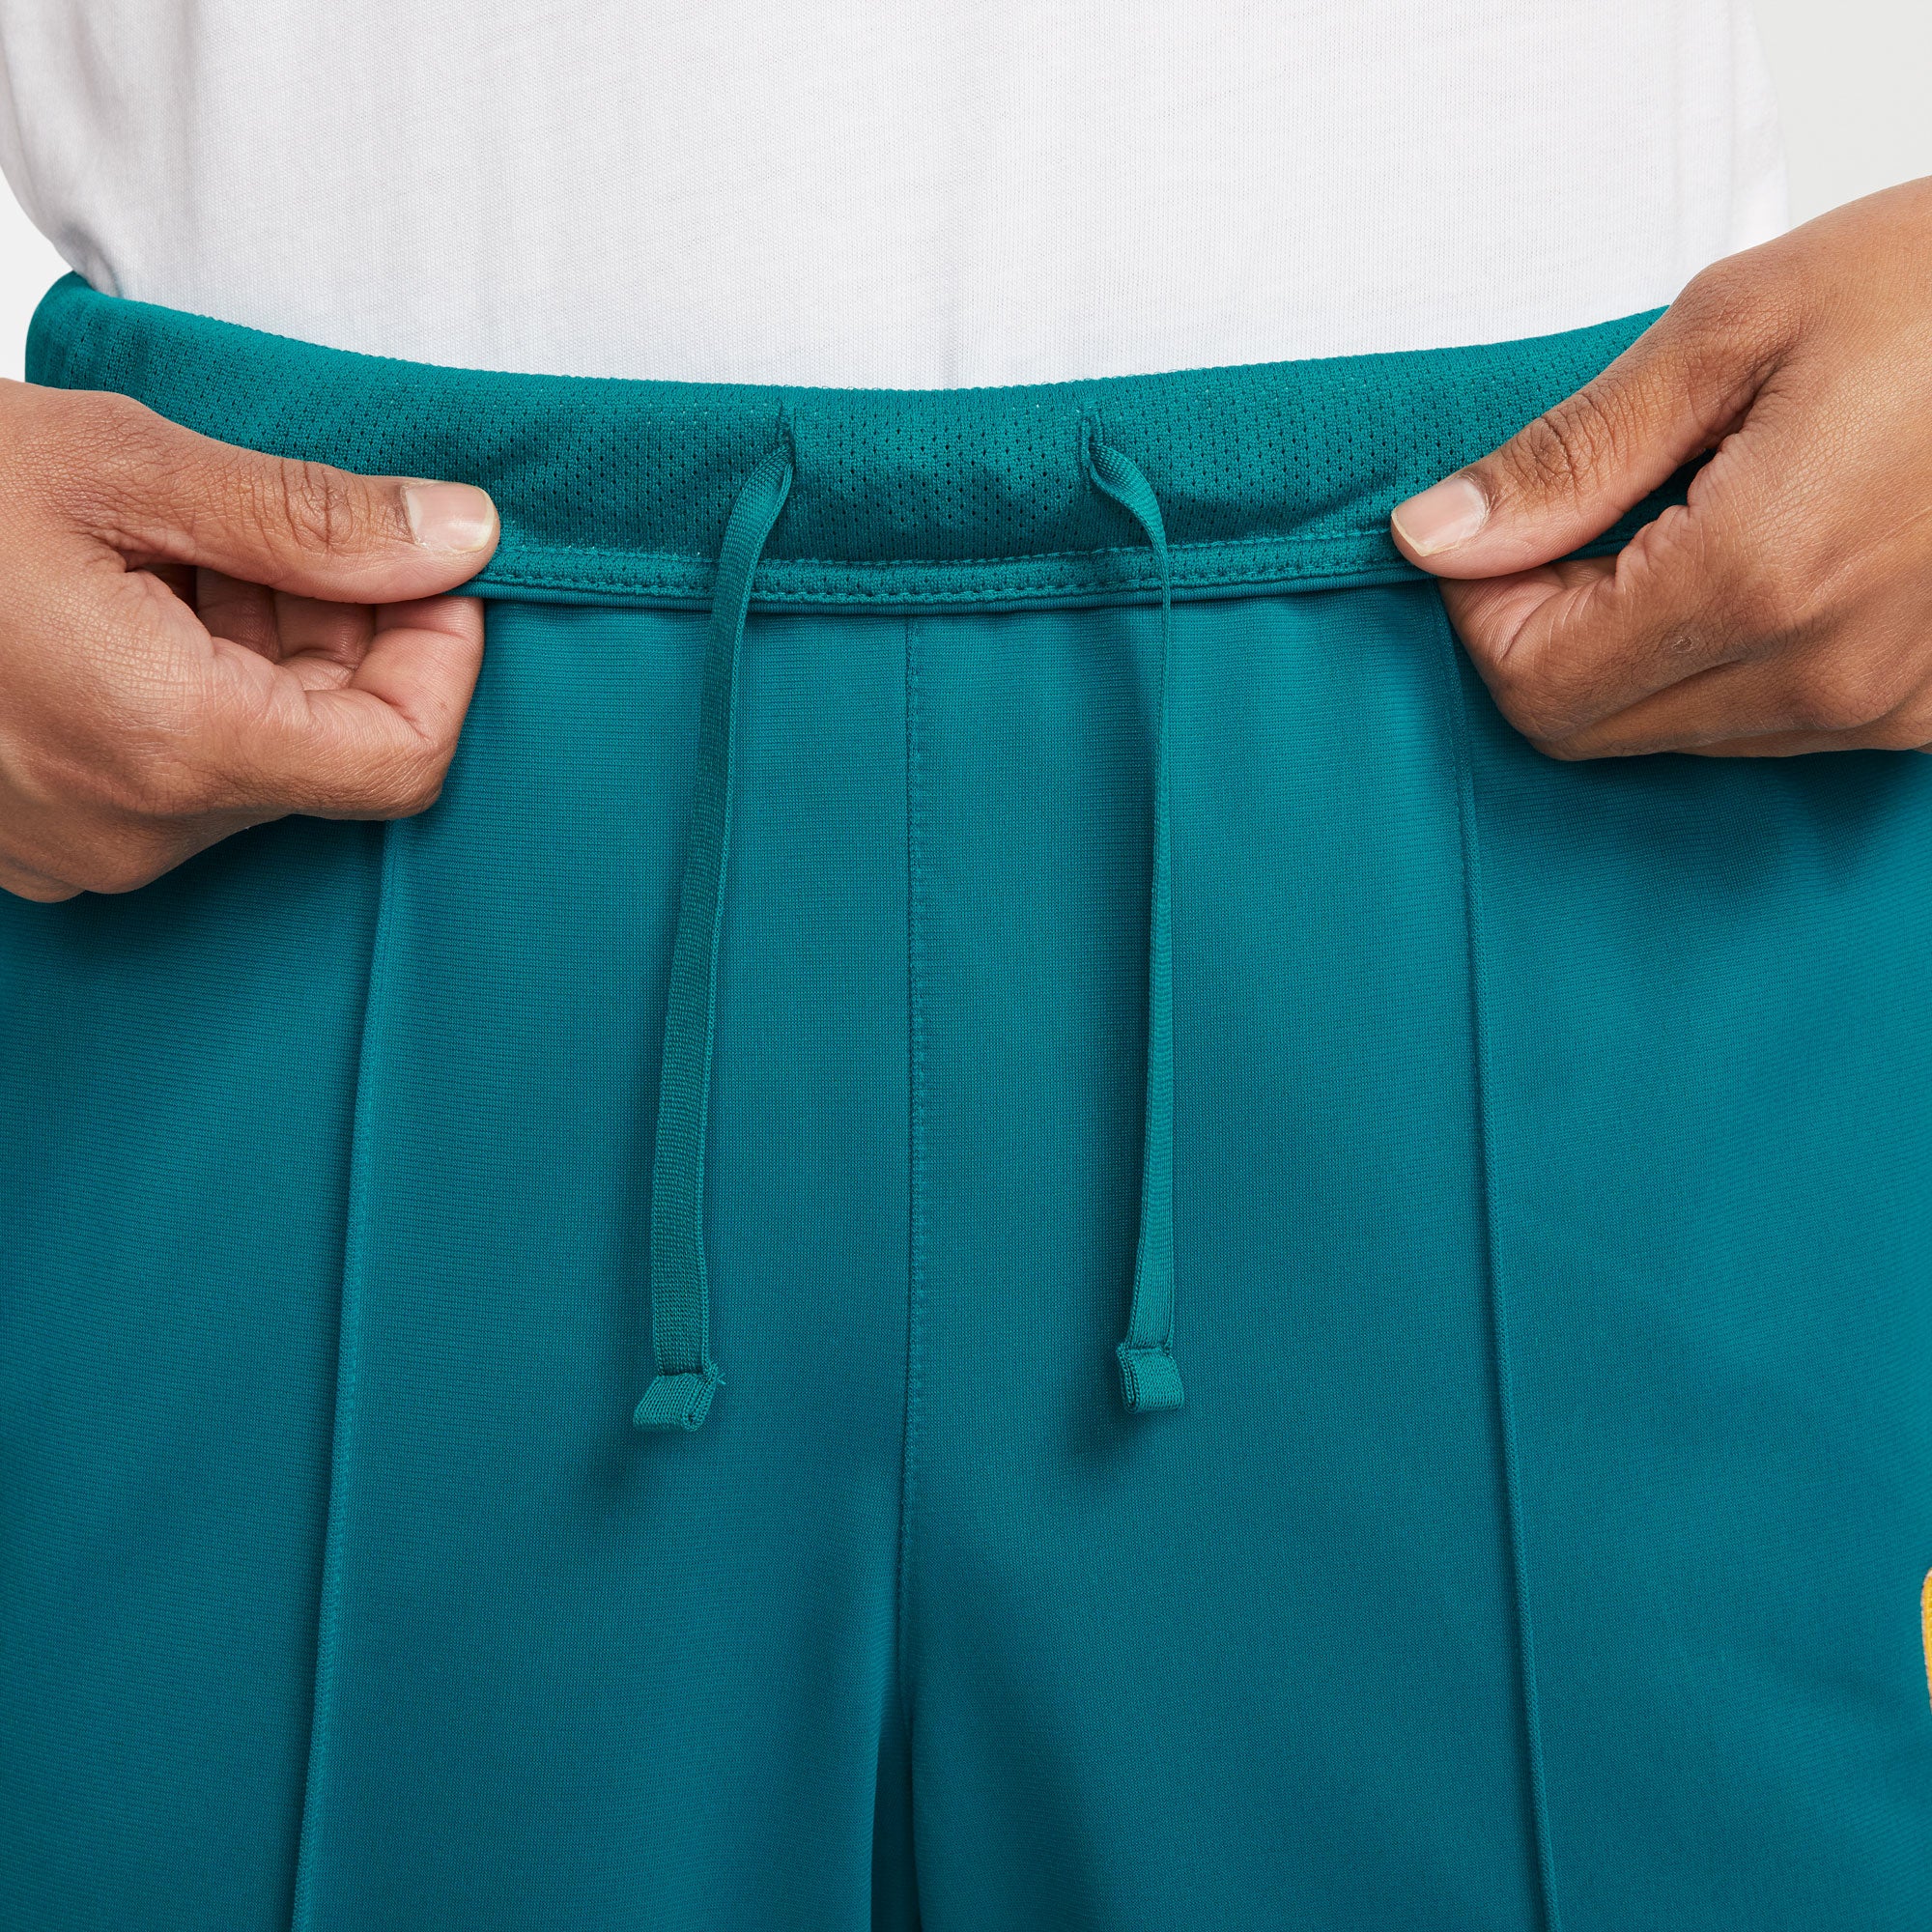 NikeCourt Heritage Men's Tennis Pants Green (7)